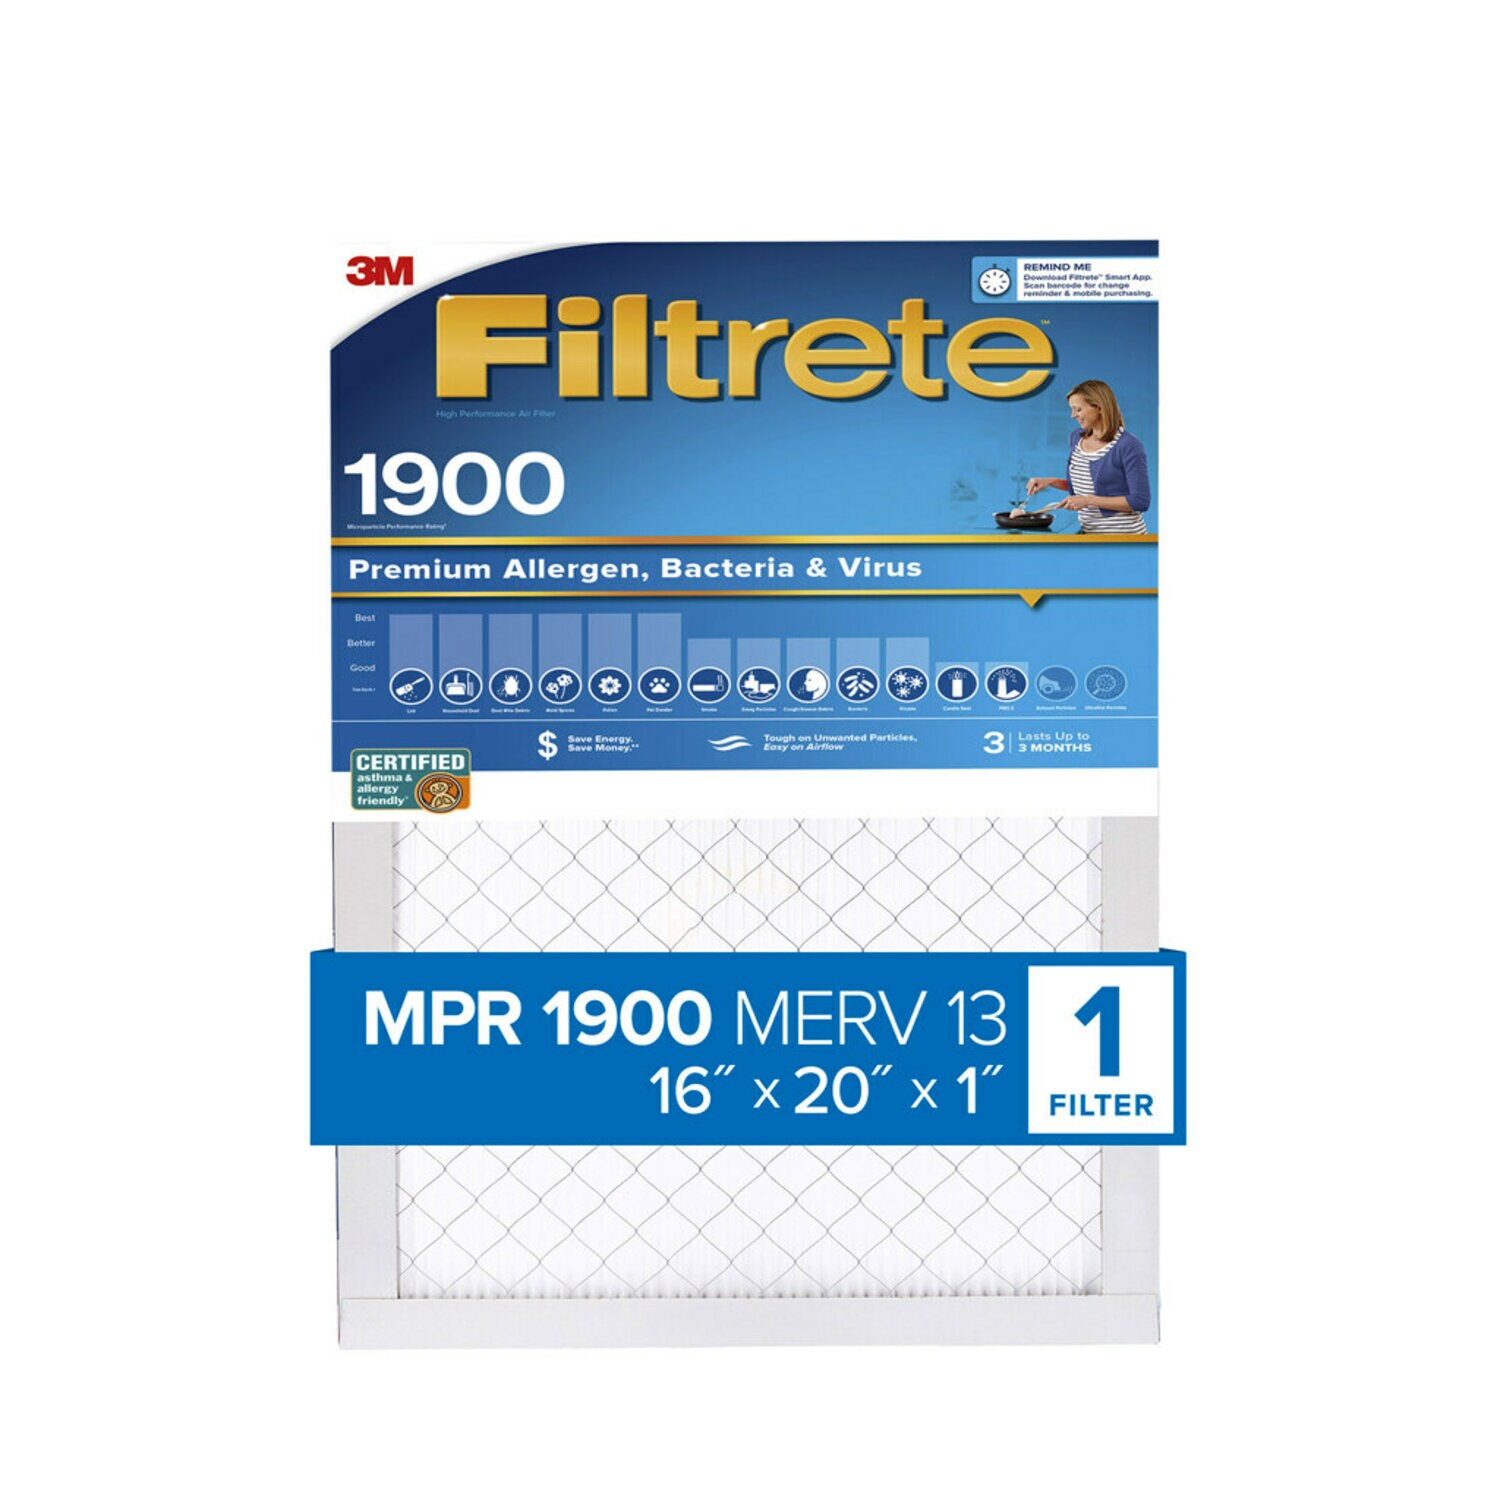 7100268933 - Filtrete High Performance Air Filter 1900 MPR UA00-4, 16 in x 20 in x 1 in (40.6 cm x 50.8 cm x 2.5 cm)